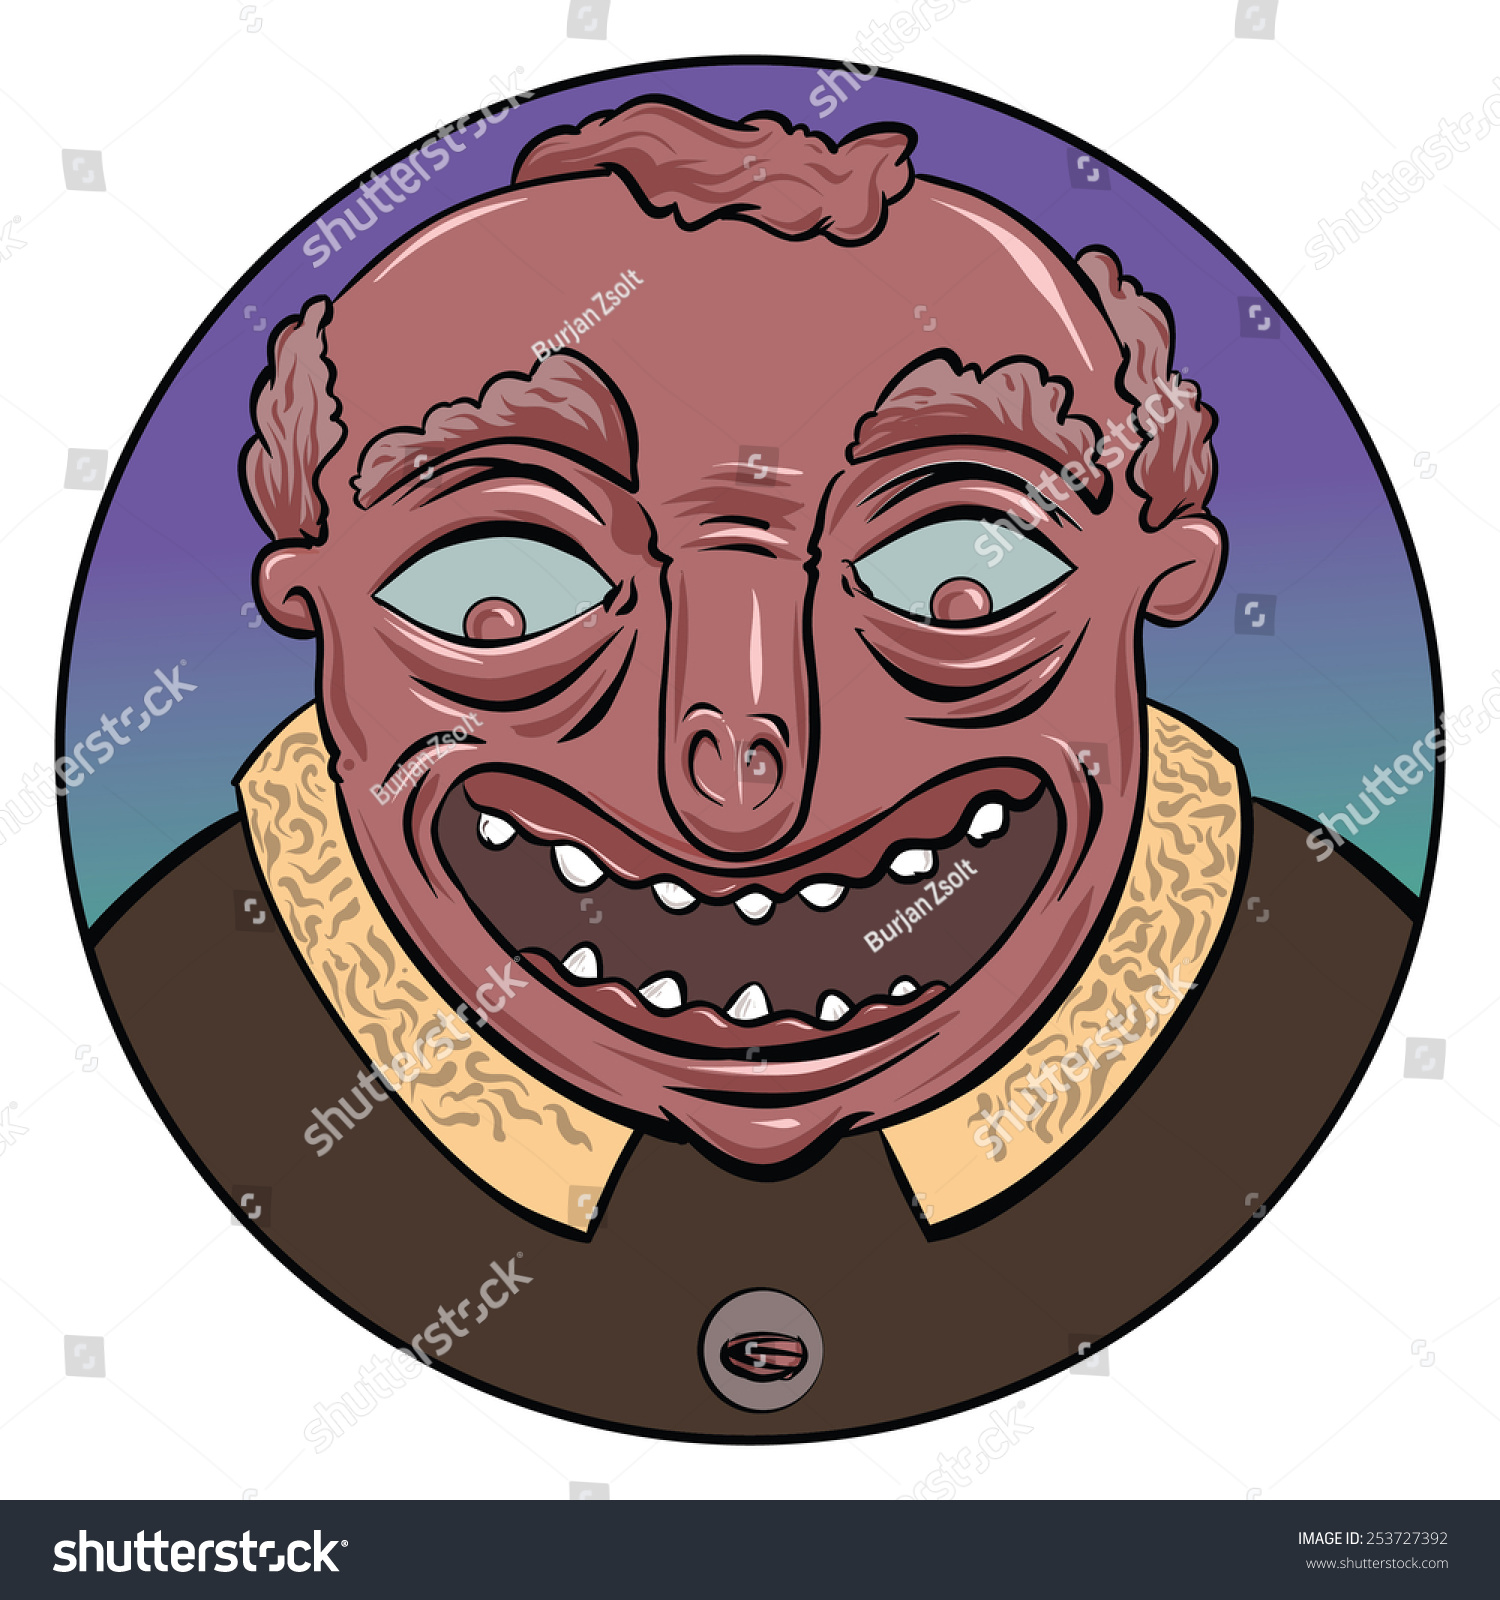 Cartoon Face Smiling Guy Profile Stock Vector 253727392 ...